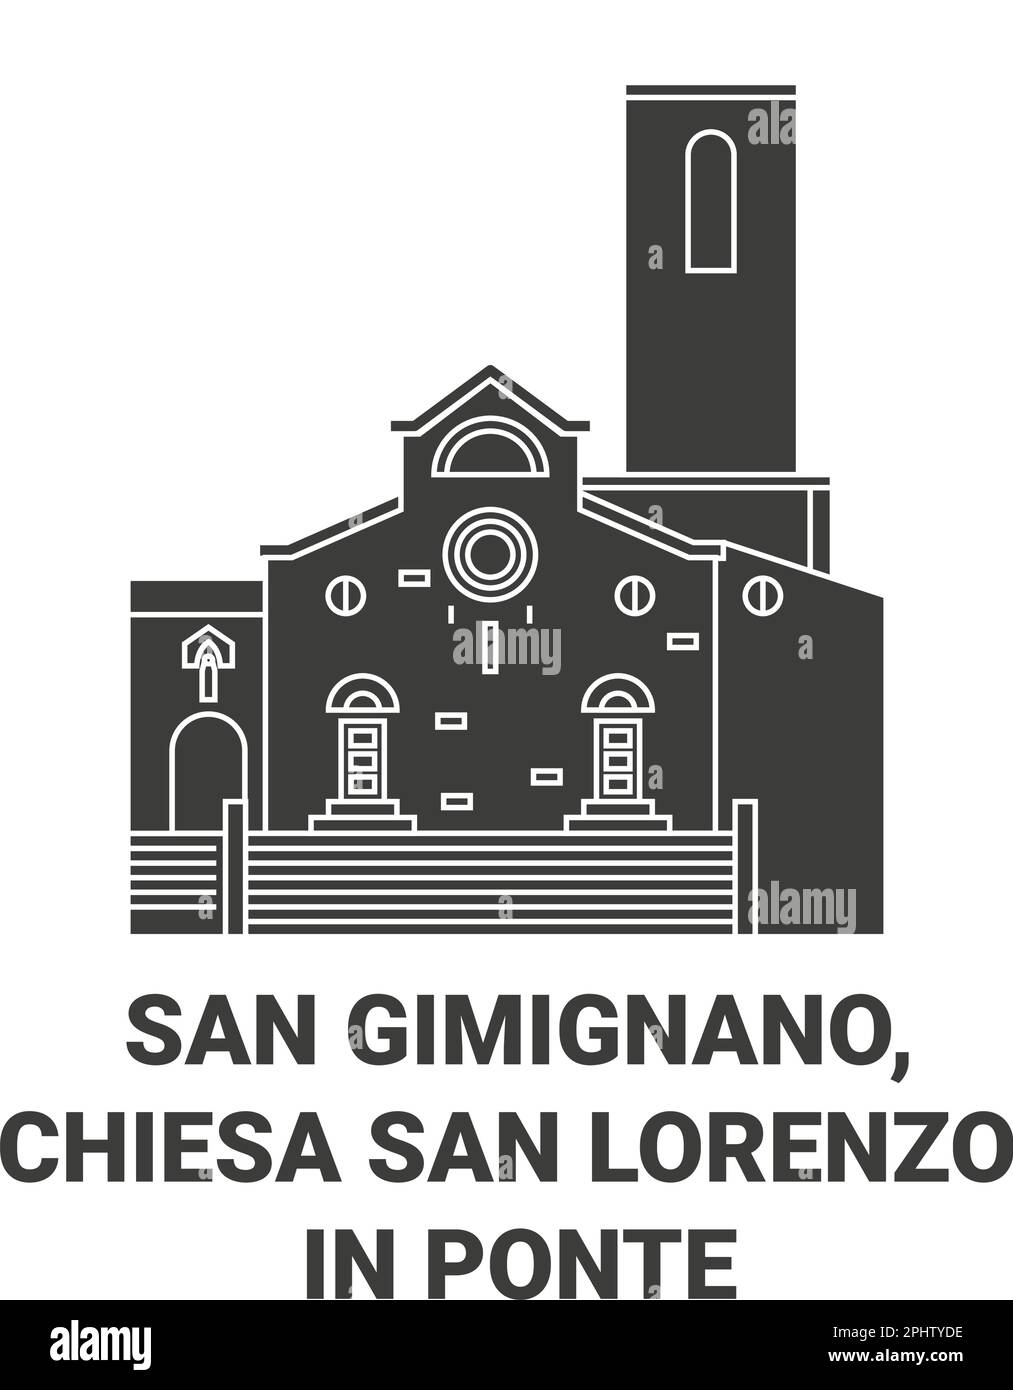 Italien, San Gimignano, Chiesa San Lorenzo in Ponte reisen Wahrzeichen Vektordarstellung Stock Vektor